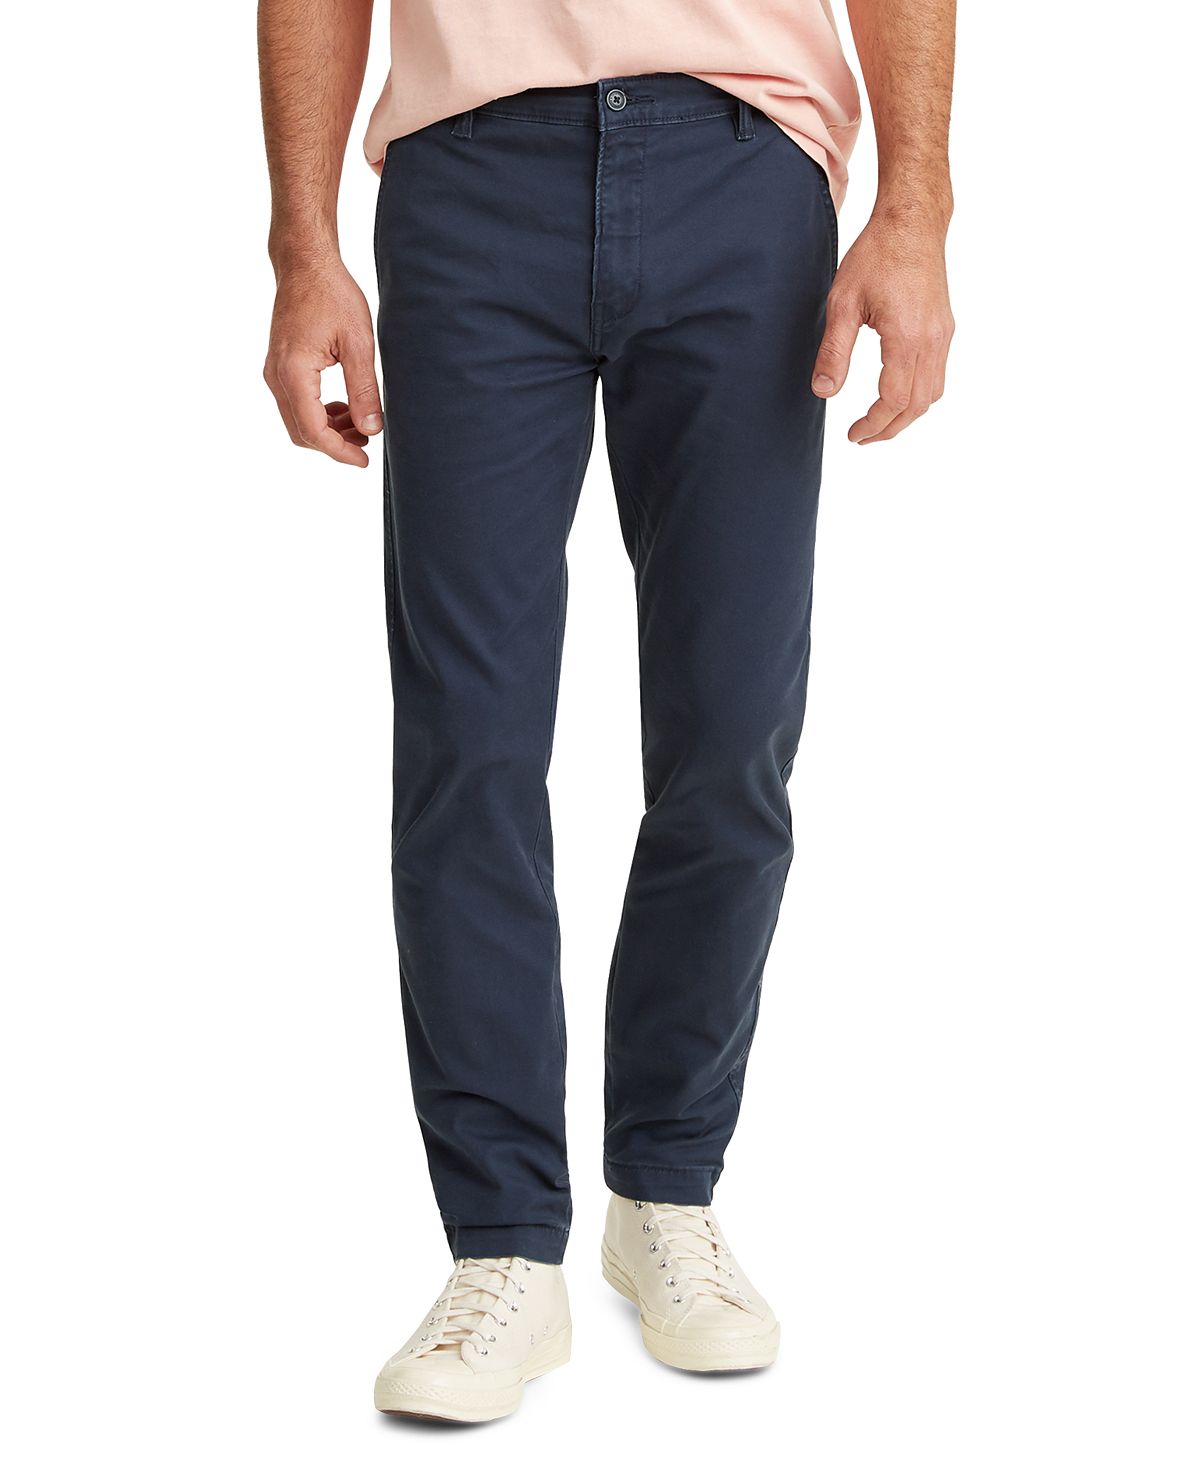 Брюки Levi's Men's XX Chino Standard Taper Fit Stretch, мульти (Размер М) школьные брюки чинос oshkosh повседневный стиль карманы размер 6 синий